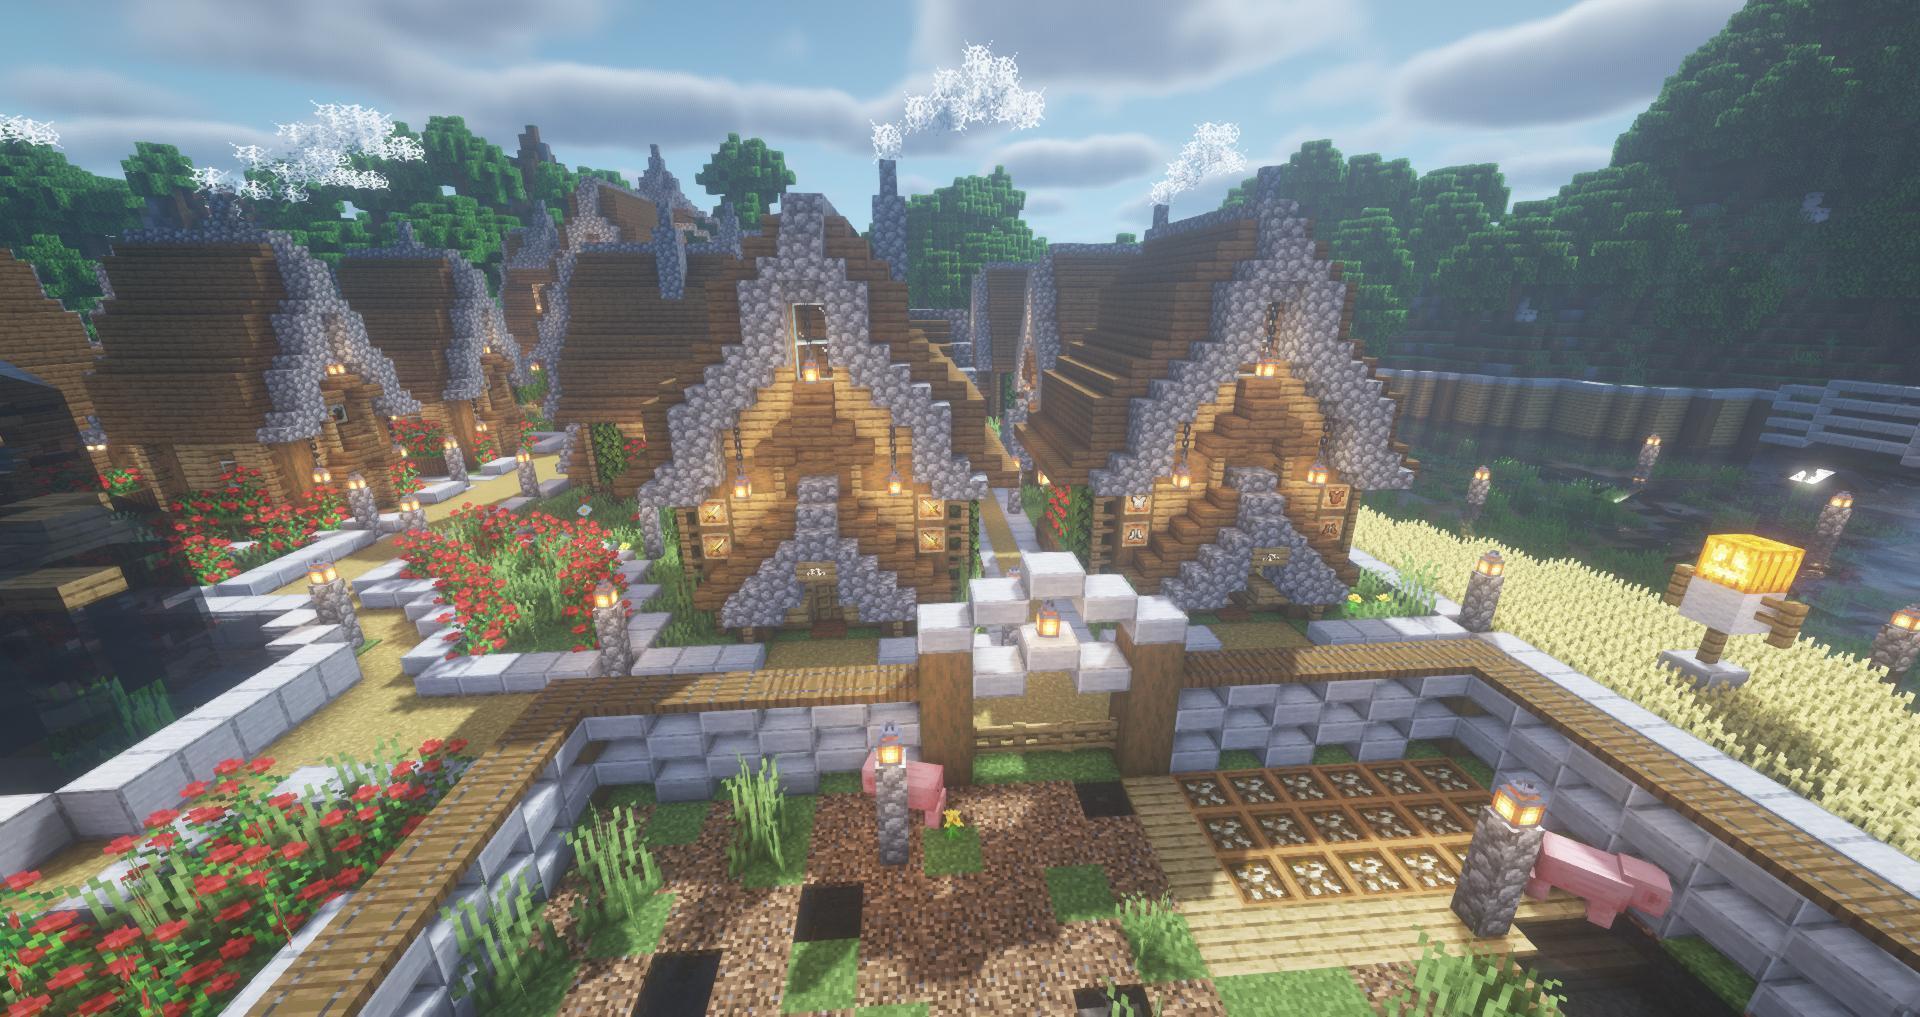 心得 餅乾貓的建築分享 中世紀村莊 島嶼建築1 圖多注意 Minecraft 我的世界 當個創世神 哈啦板 巴哈姆特